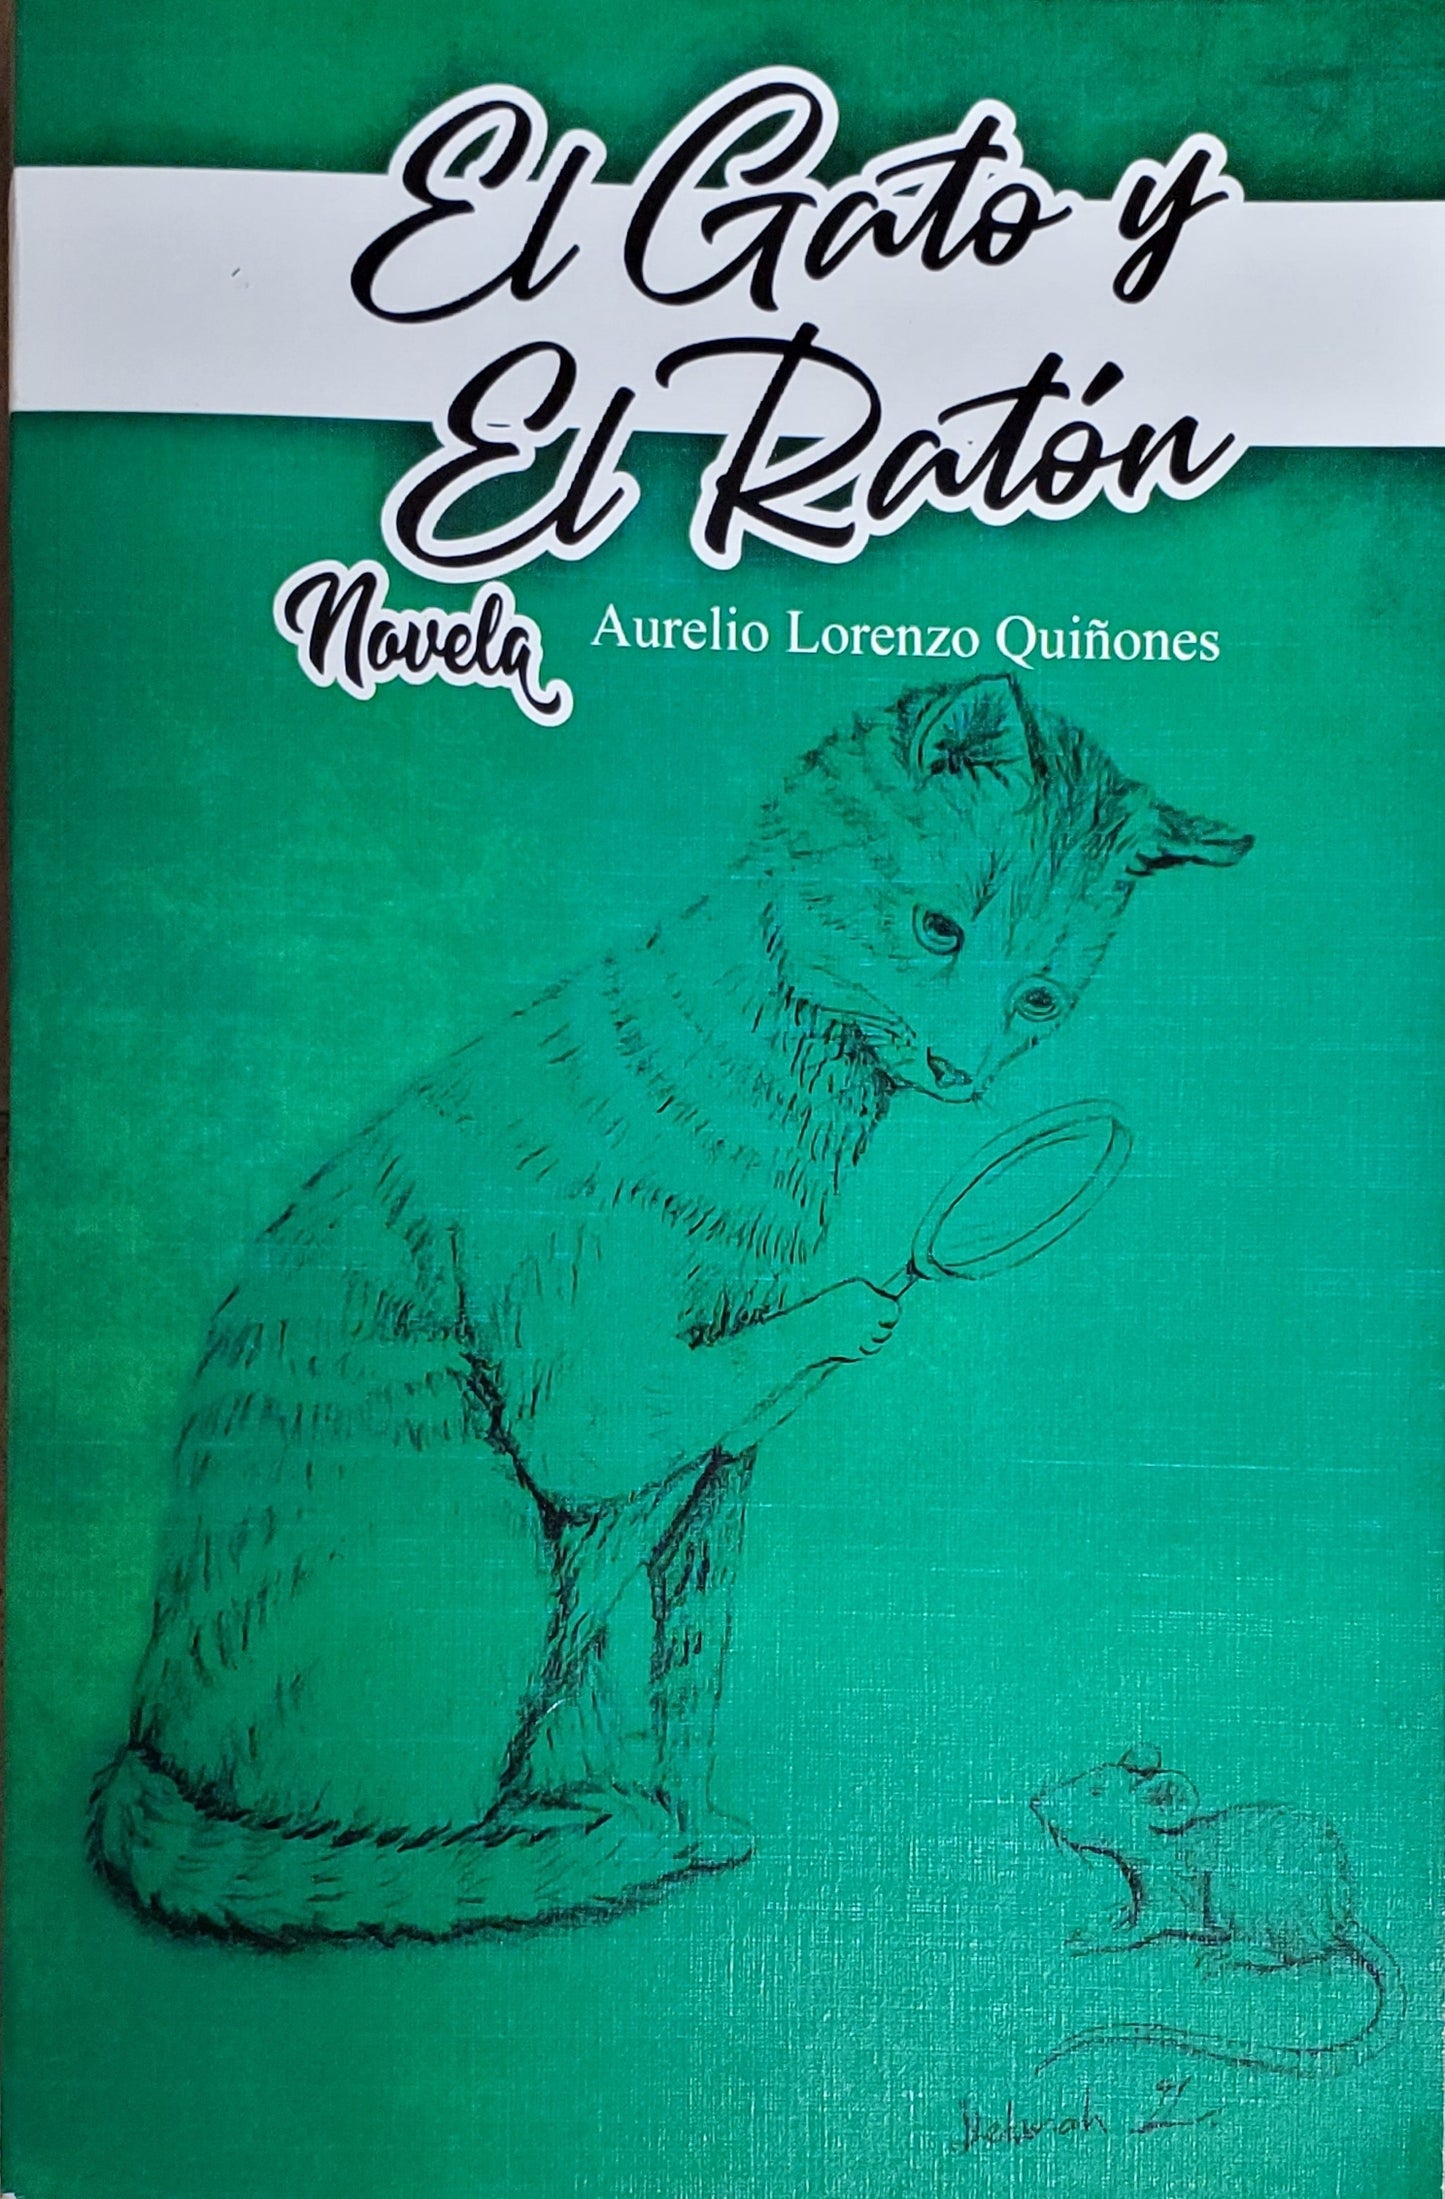 El gato y el ratón - Aurelio Lorenzo Quiñones